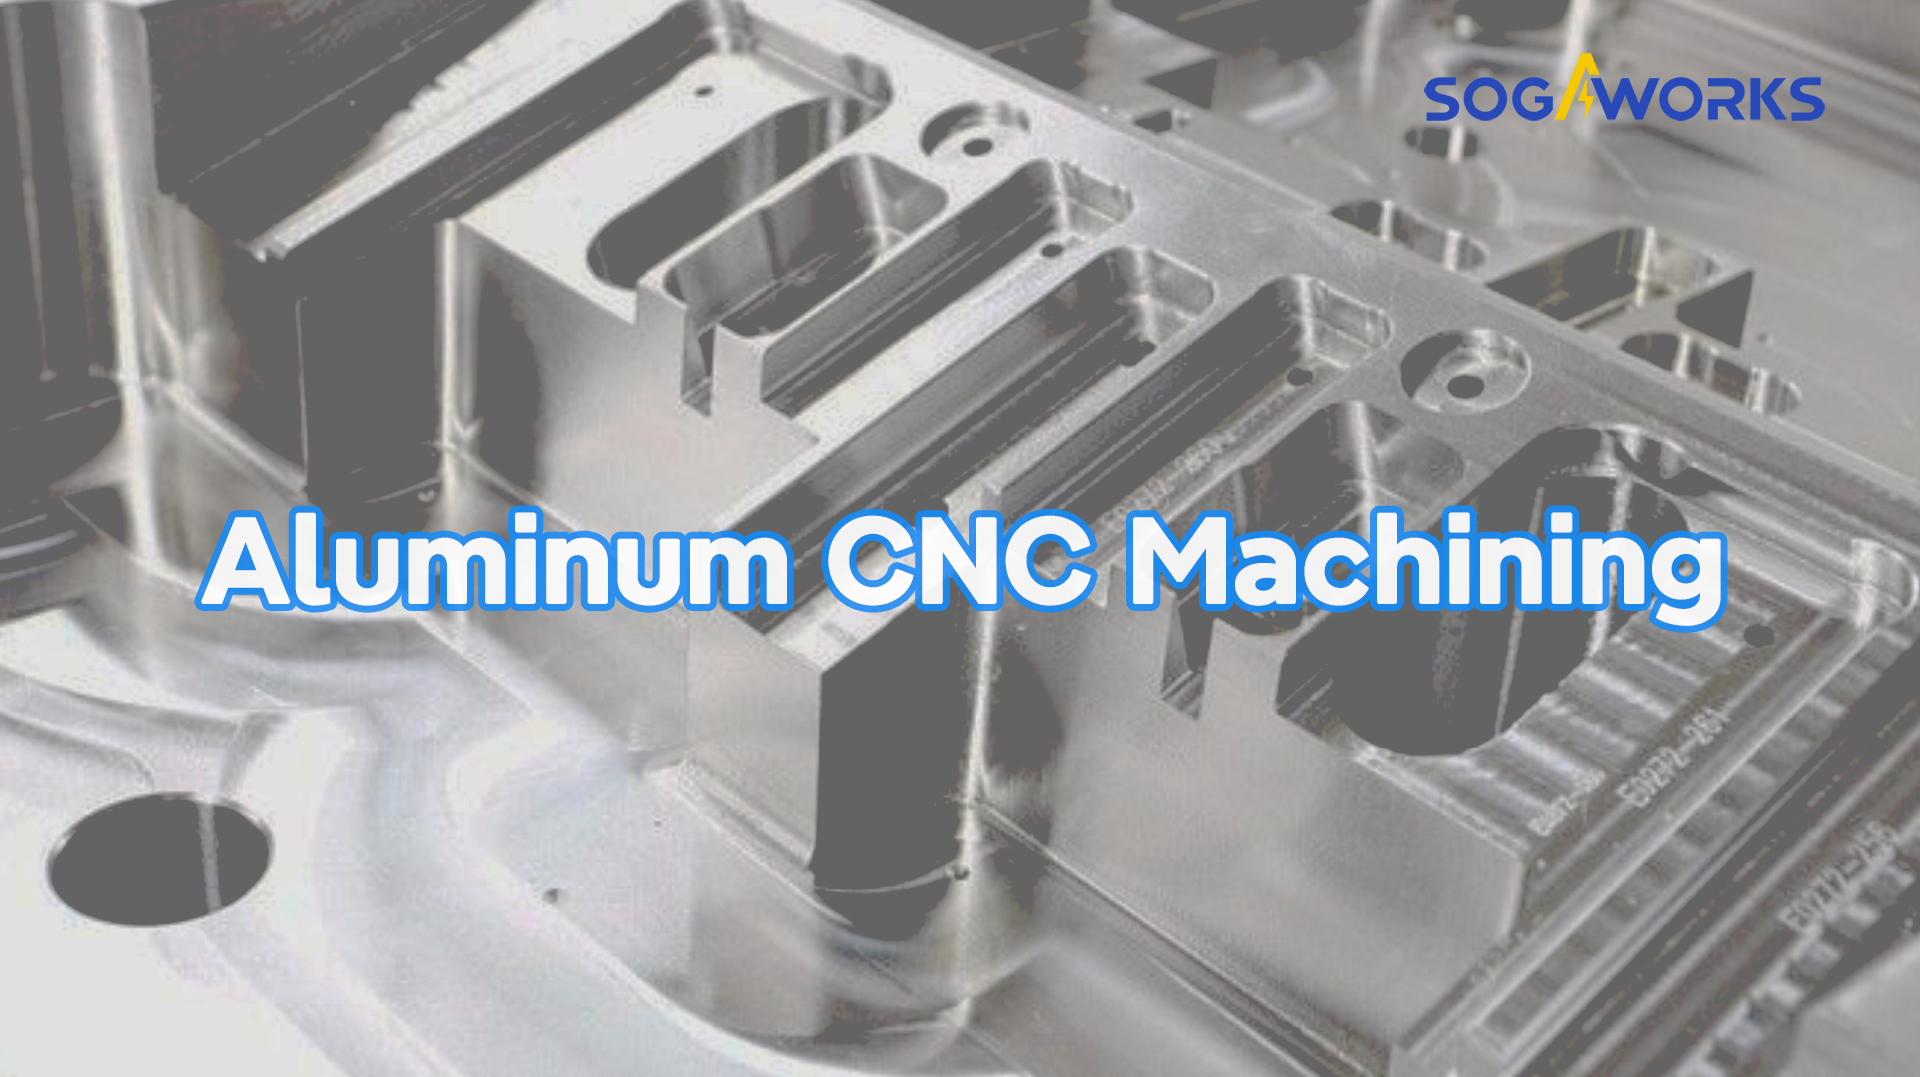 What Is Aluminum CNC Machining?